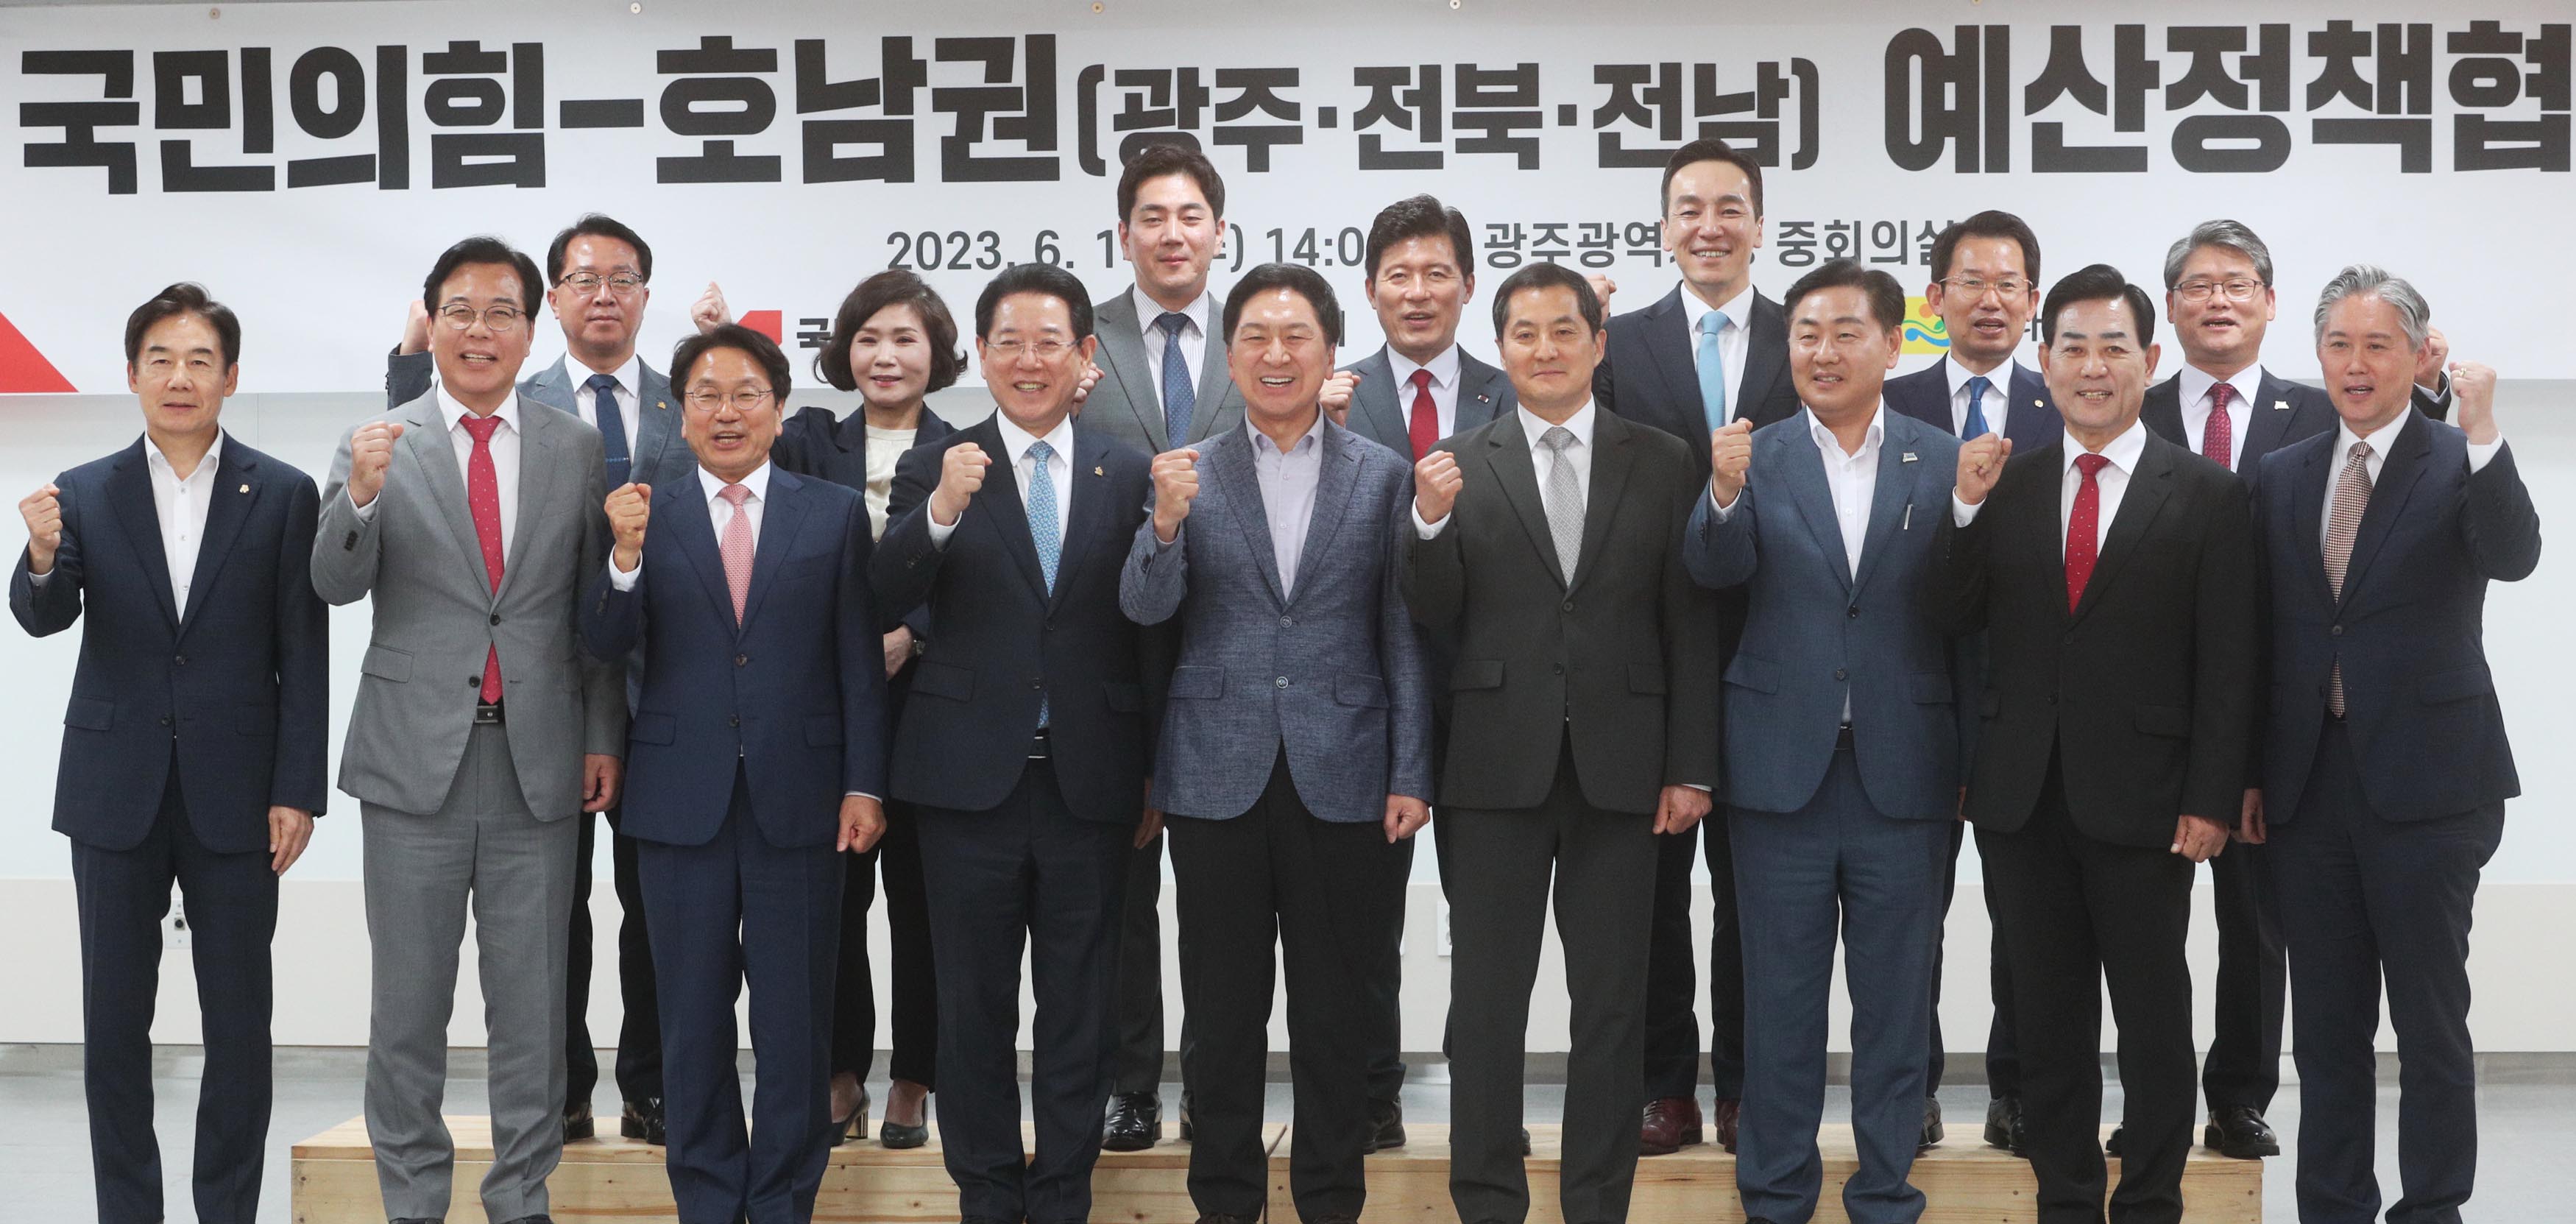 국민의 힘-호남권(광주ㆍ전북ㆍ전남) 예산정책협의회1